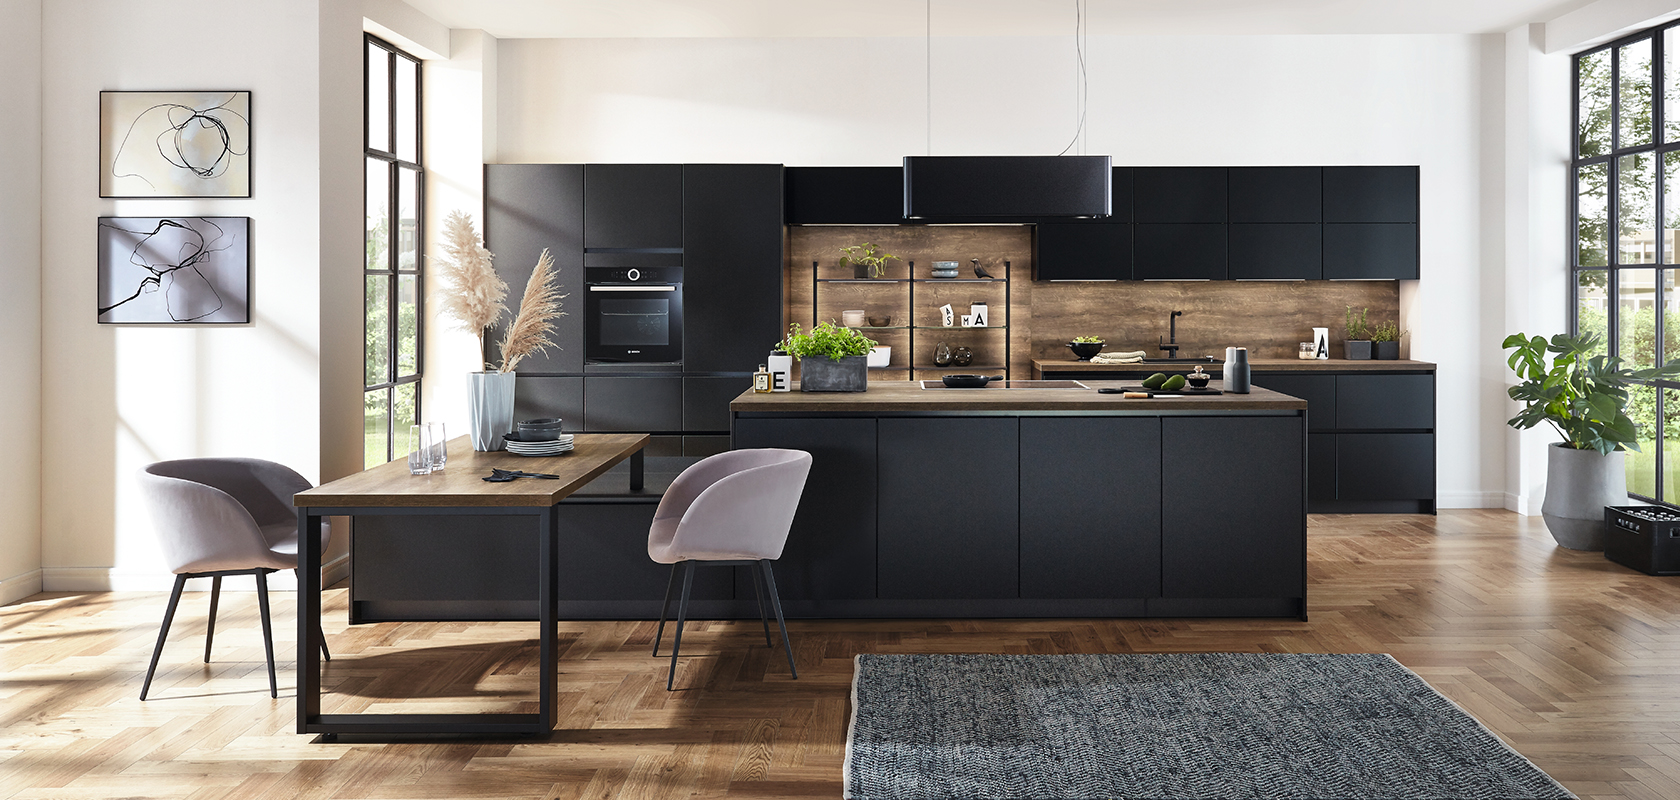 Moderní interiér kuchyně předvádějící elegantní černé skříňky, dřevěné doplňky a prostorný ostrov doplněný přirozeným světlem z velkých oken.